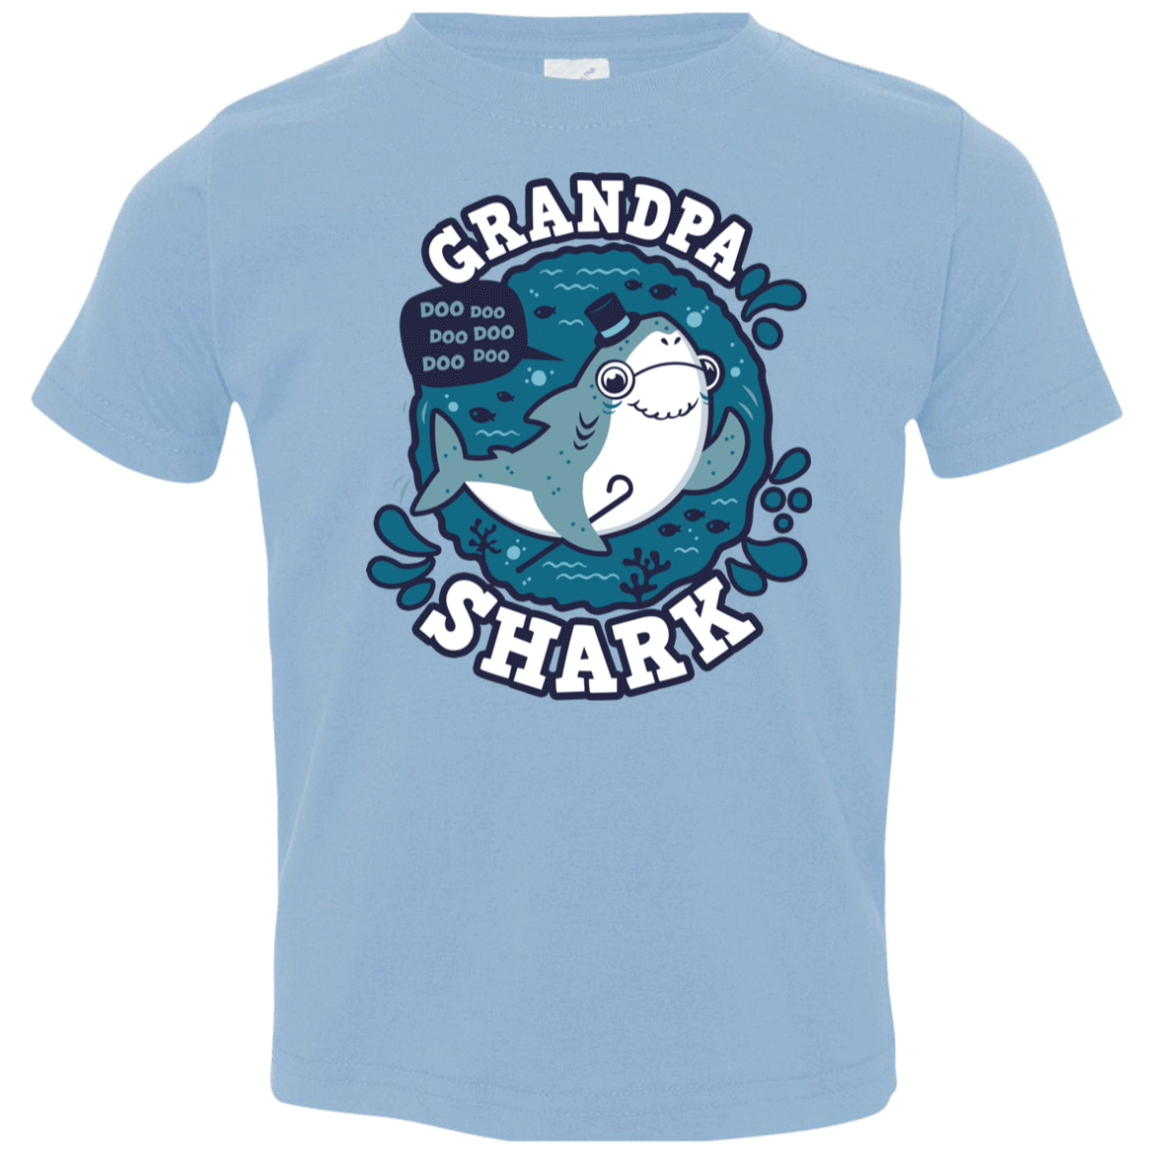 T-Shirts Light Blue / 2T Shark Family trazo - Grandpa Toddler Premium T-Shirt